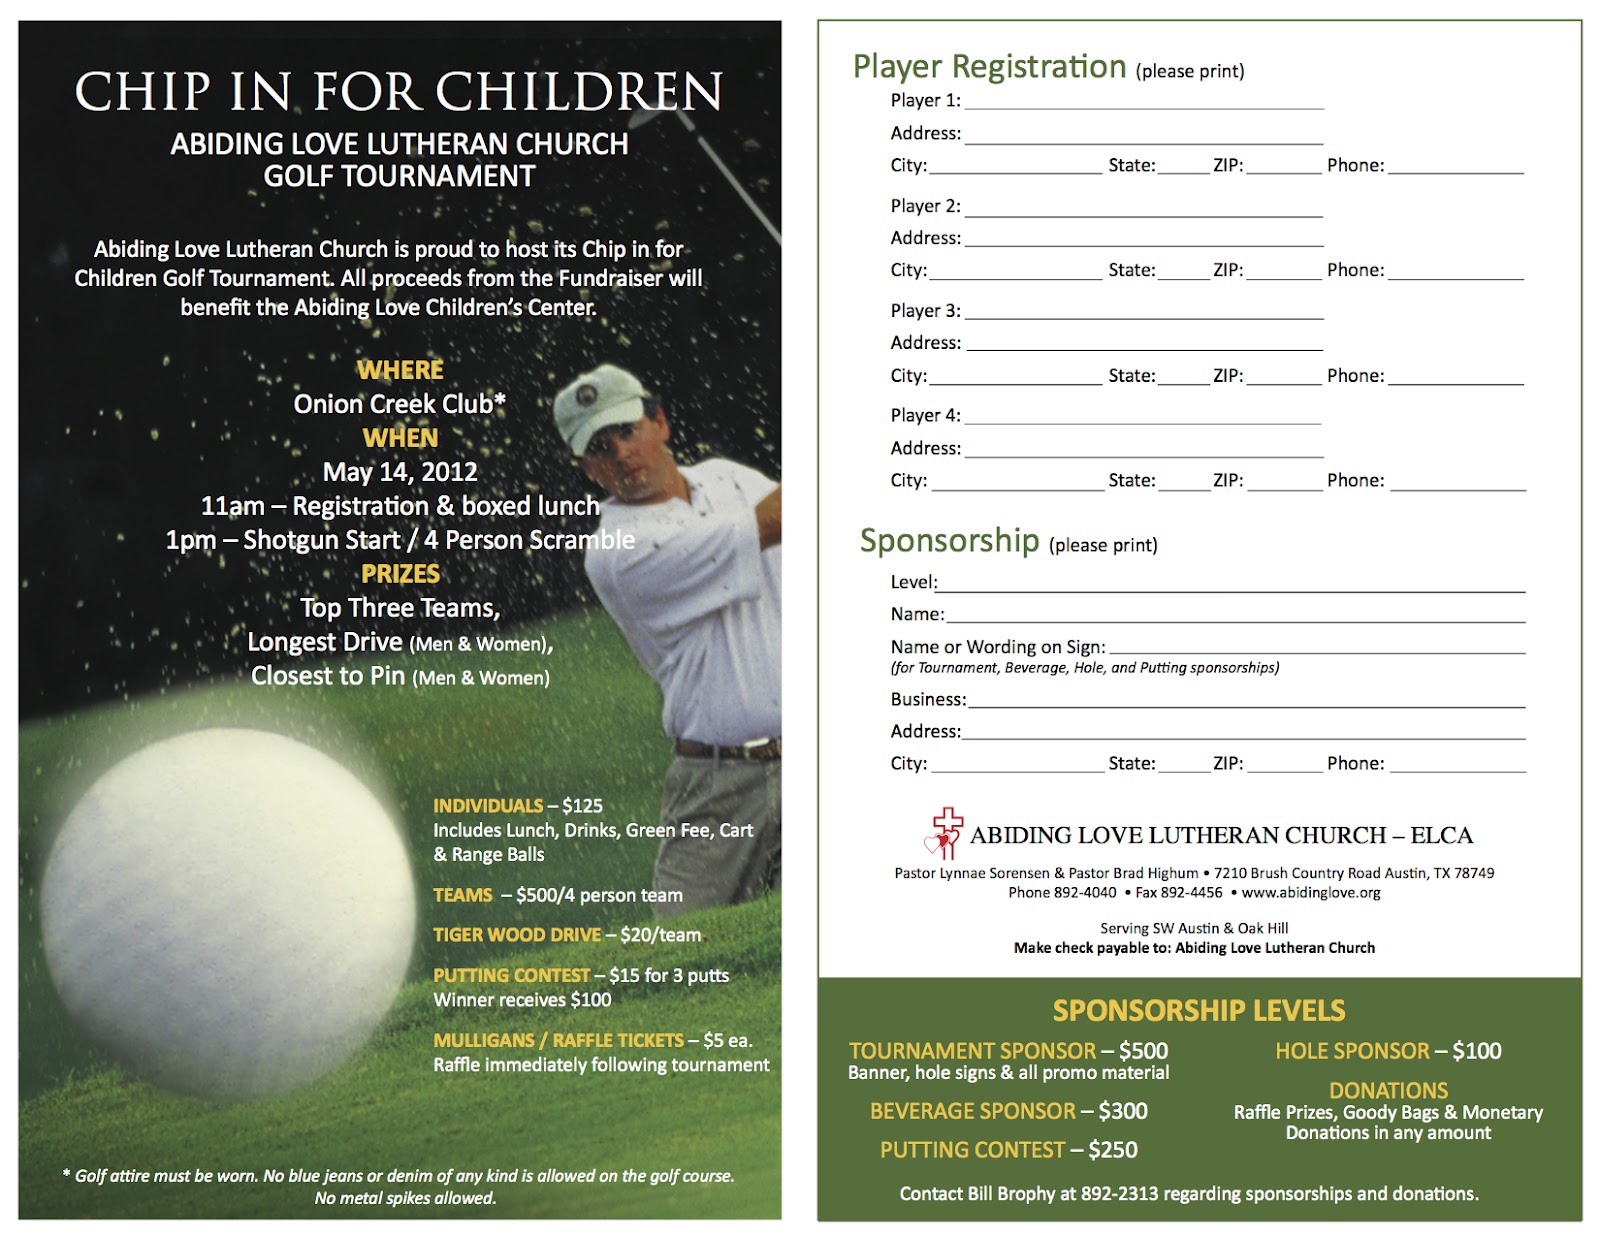 golf-tournament-registration-form-hihtm